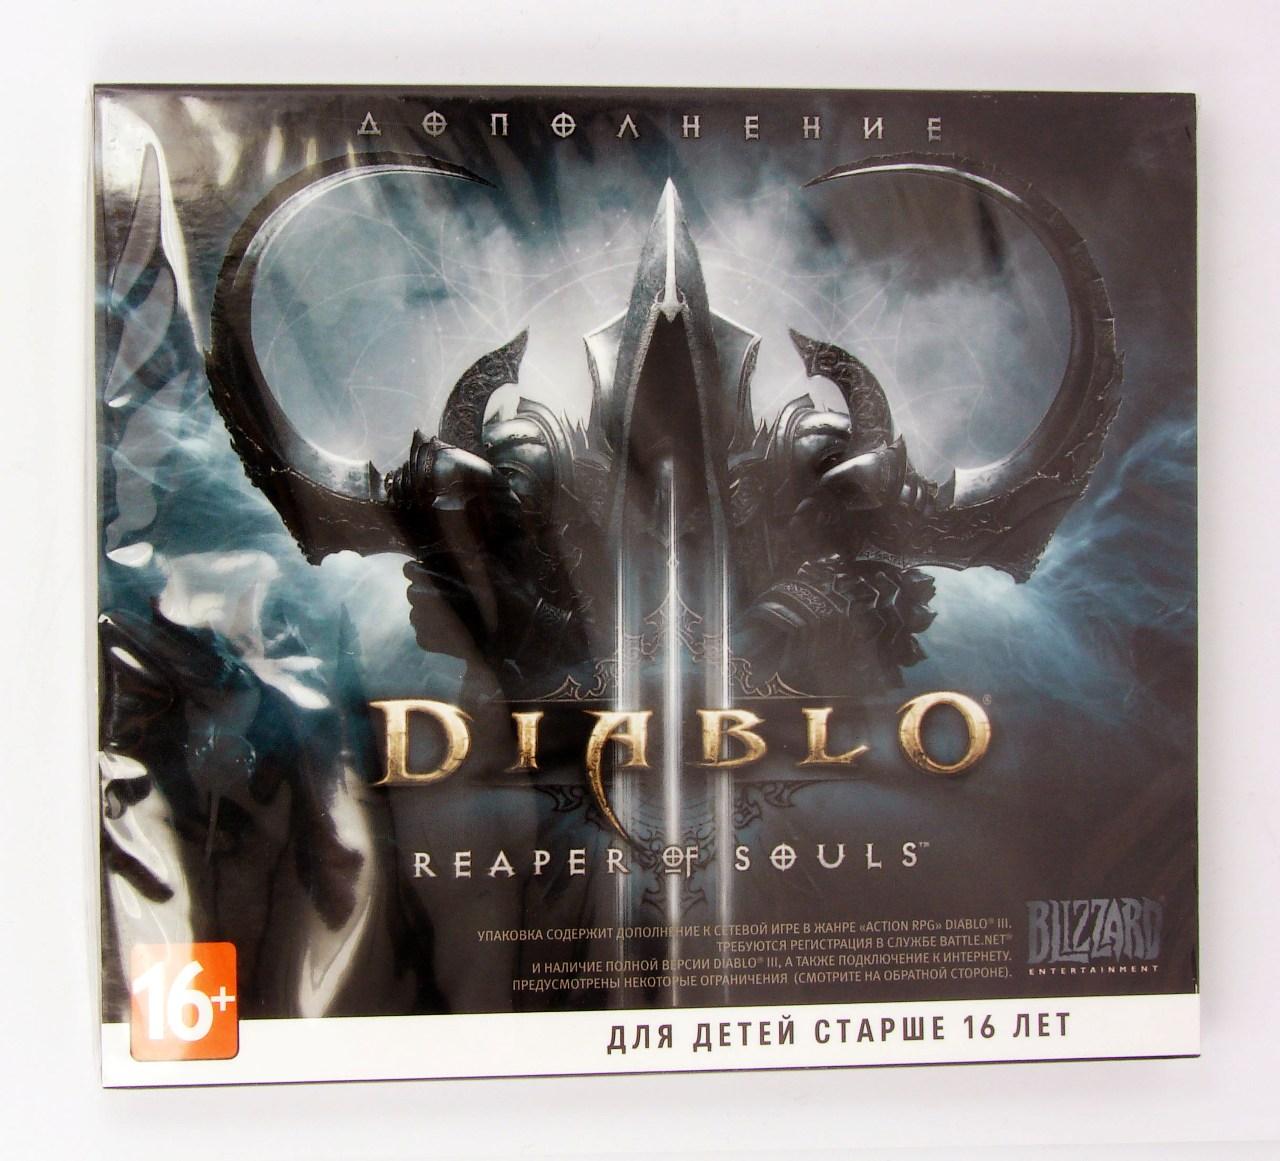 Компьютерный компакт-диск Diablo 3: Reaper of Souls (дополнение) (ПК), фирма "Blizzard", DVD